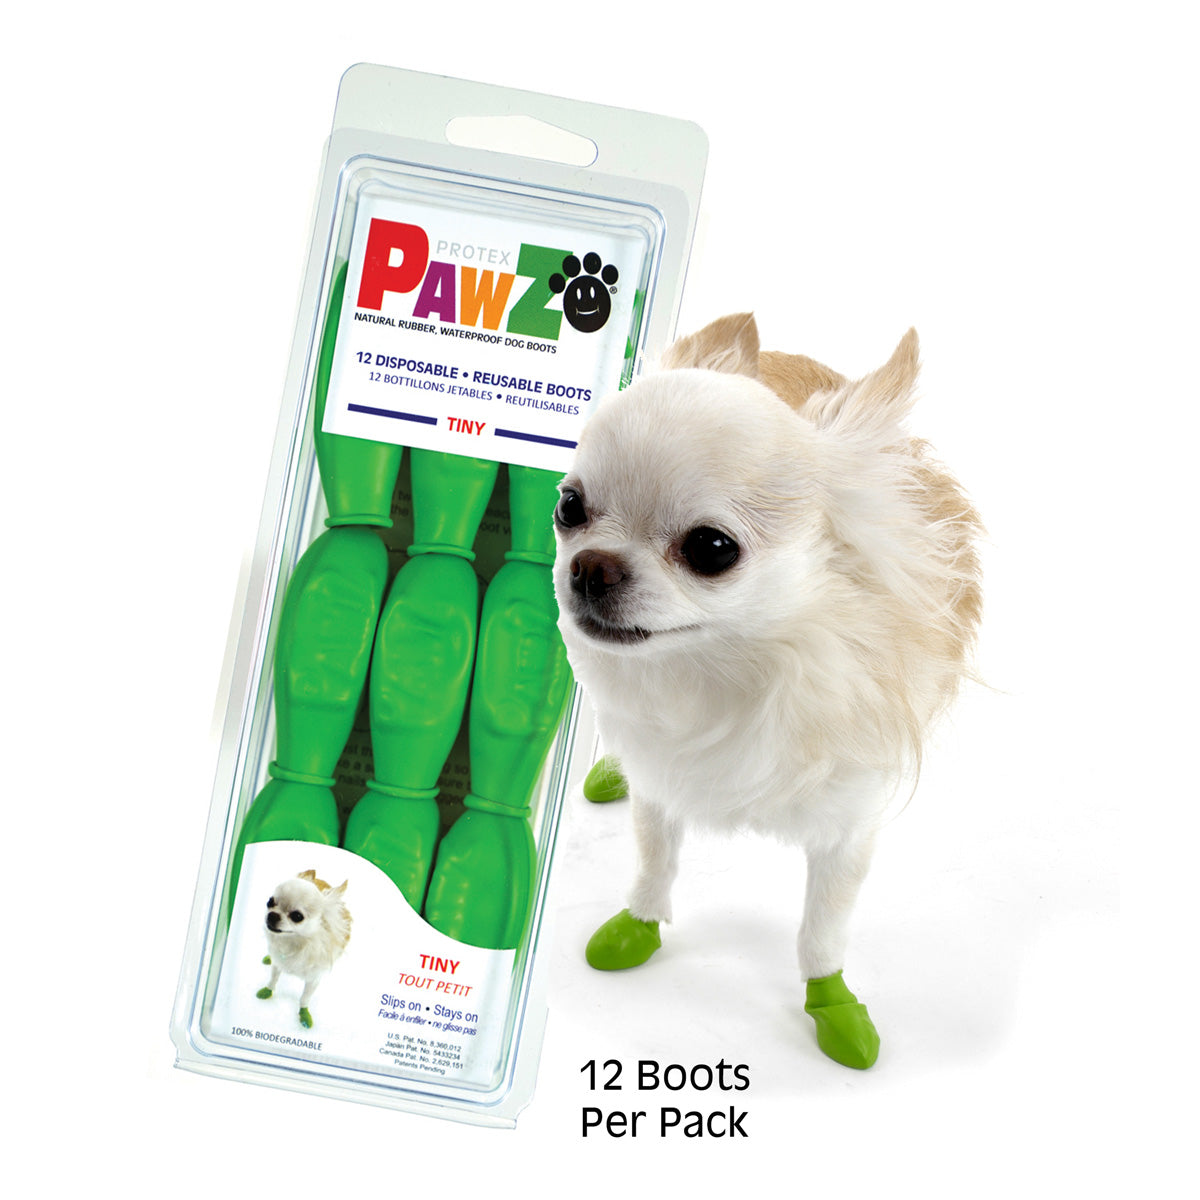 Pawz bottes Tiny Bottes pour chien Pawz Rubber Balloon